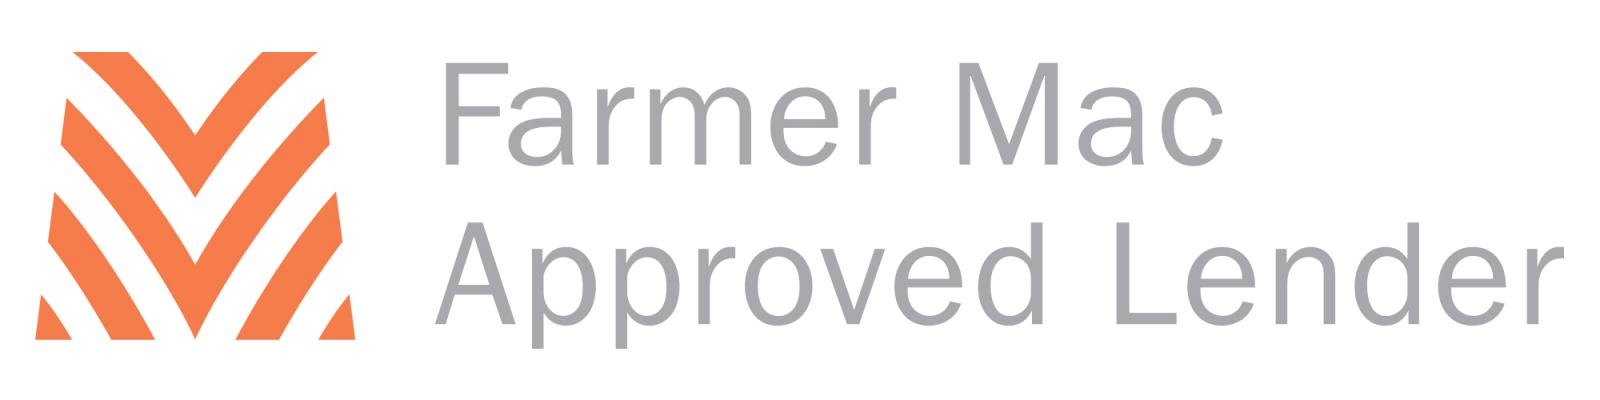 Farmer Mac Approved Lender